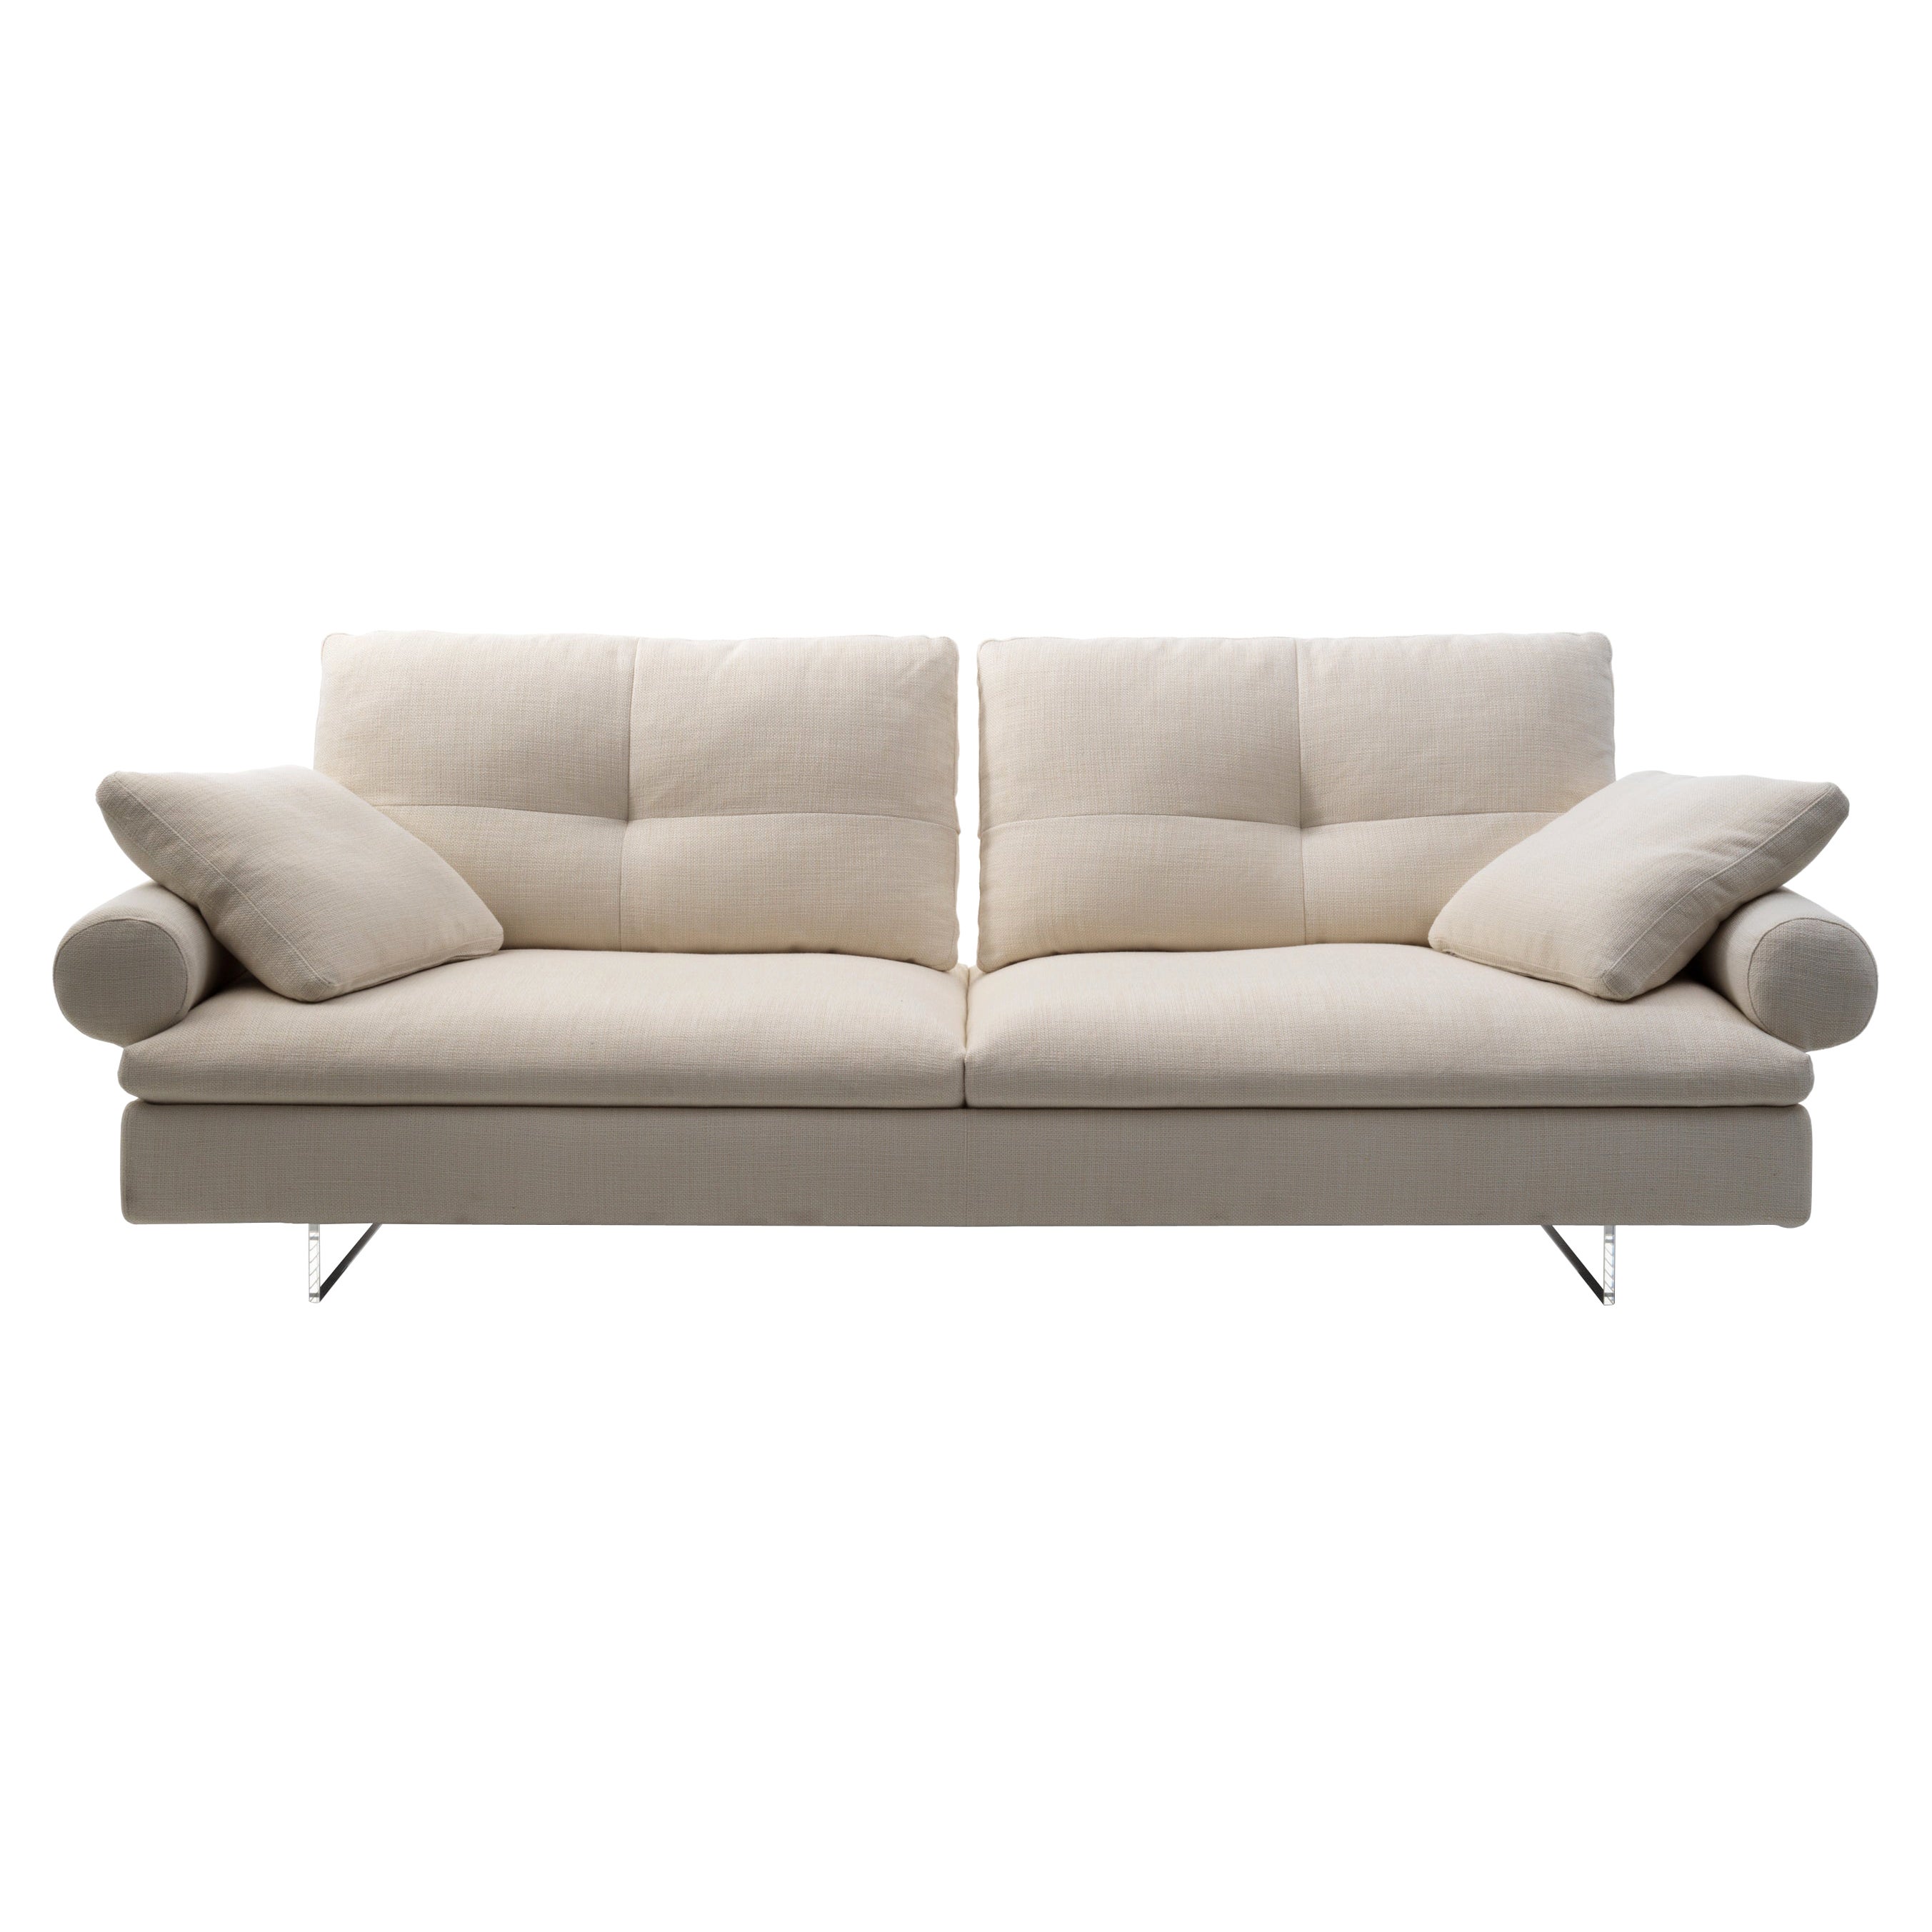 Limes Neues 88 Extra großes Sofa mit Polsterung und Rollarmlehne von Sergio Bicego, neu